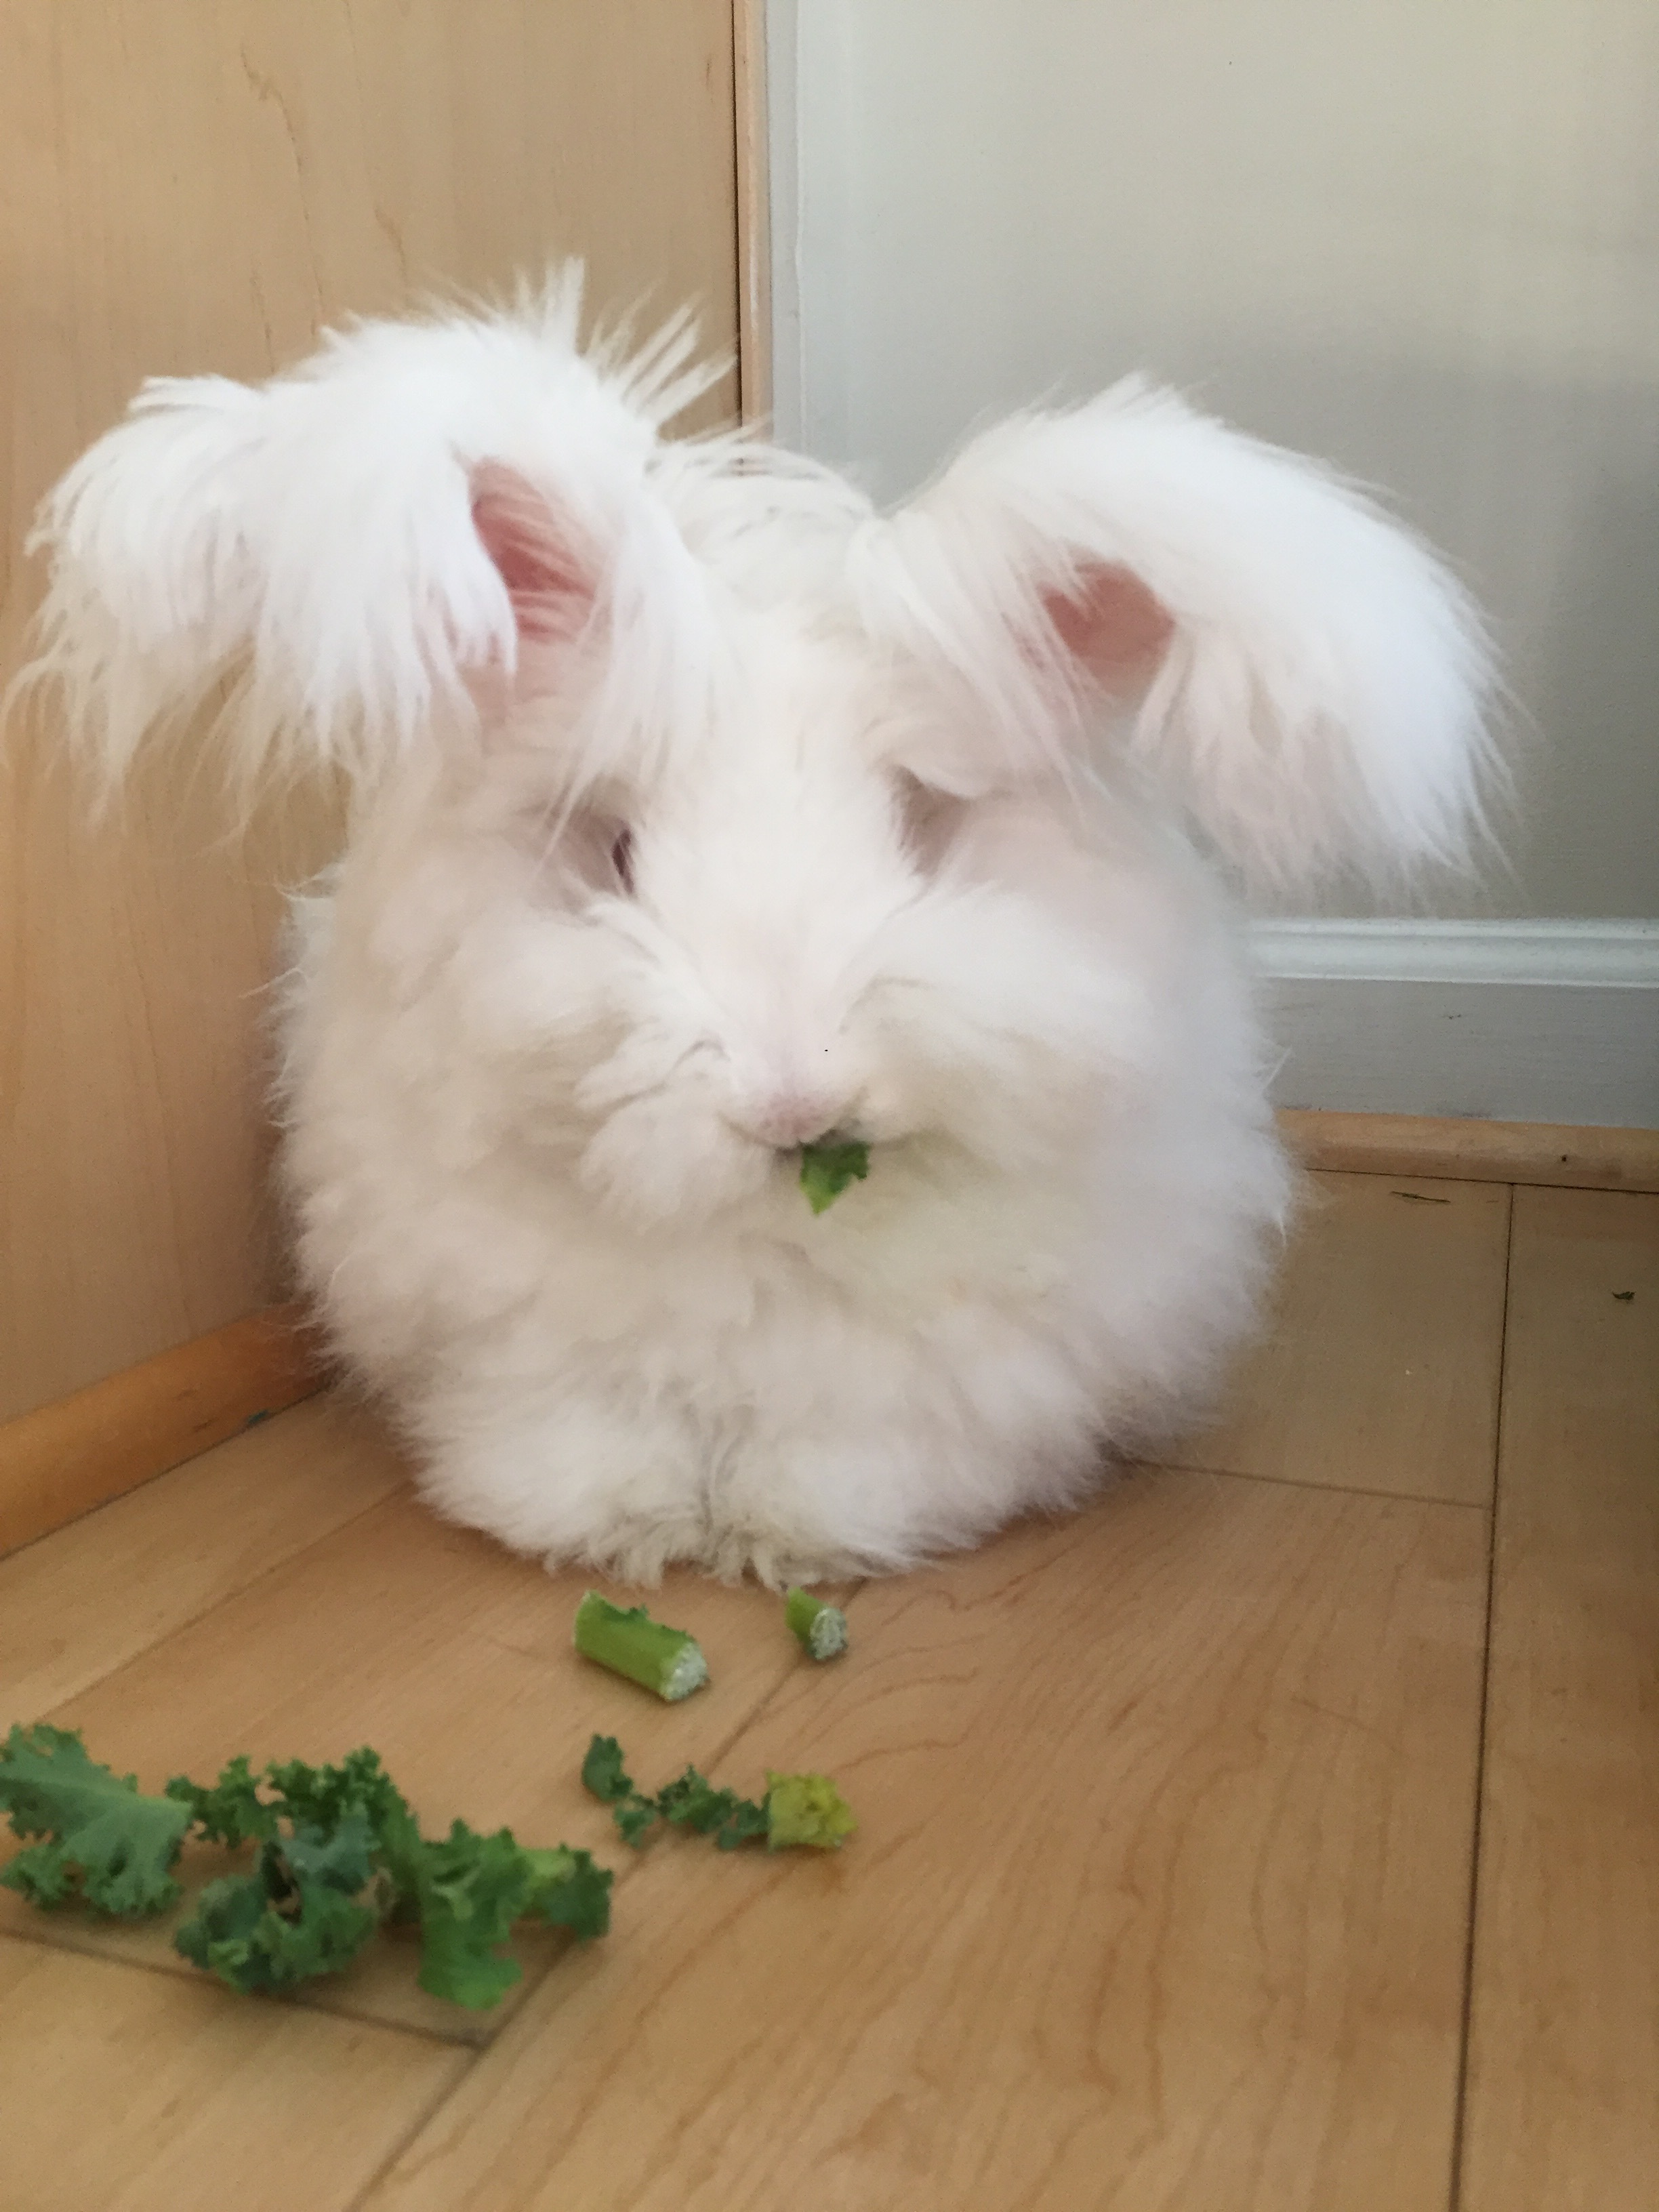 Baby bunny eating kale